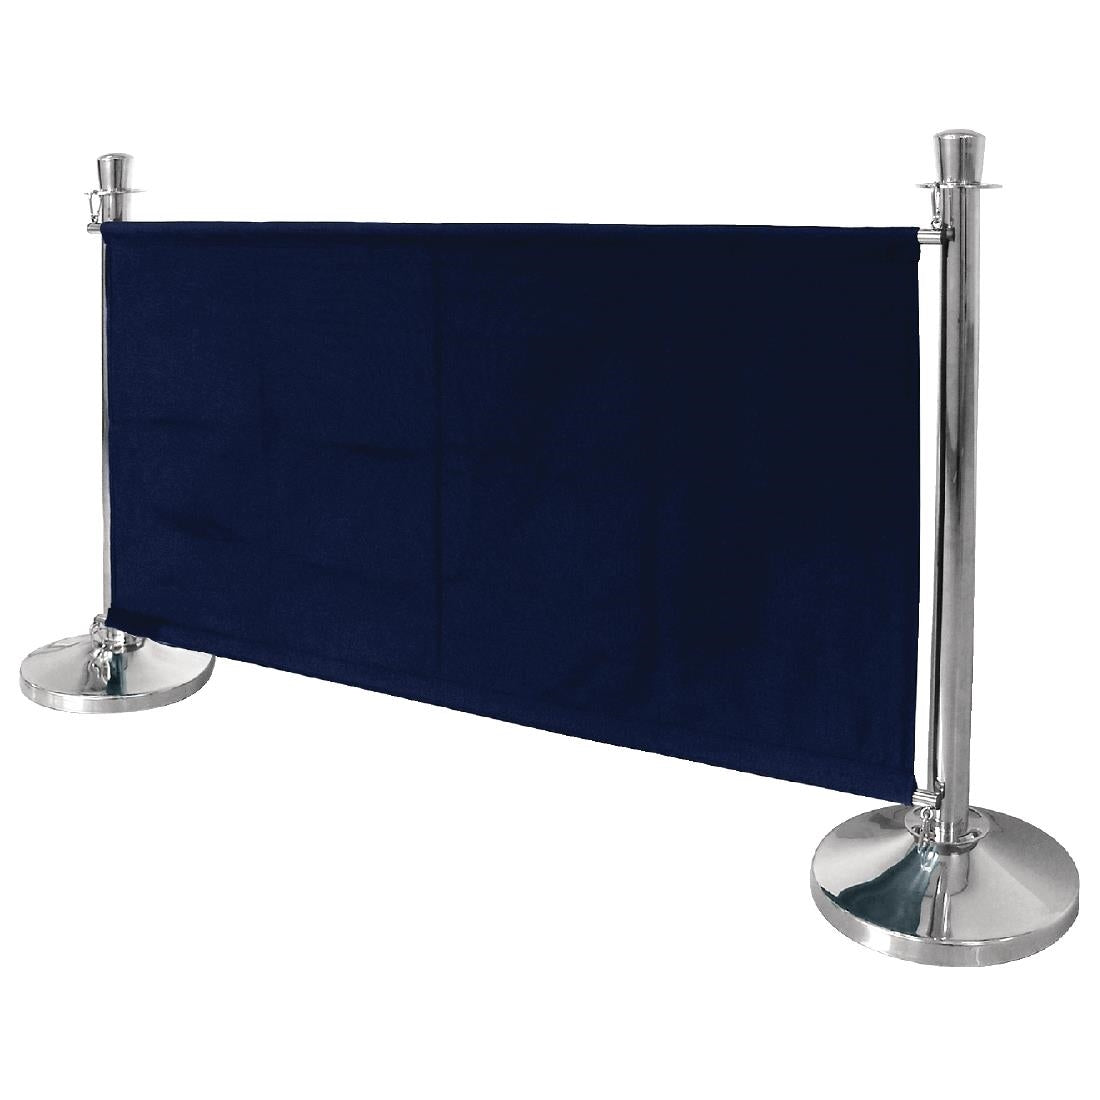 DL480 Bolero Dark Blue Canvas Barrier JD Catering Equipment Solutions Ltd